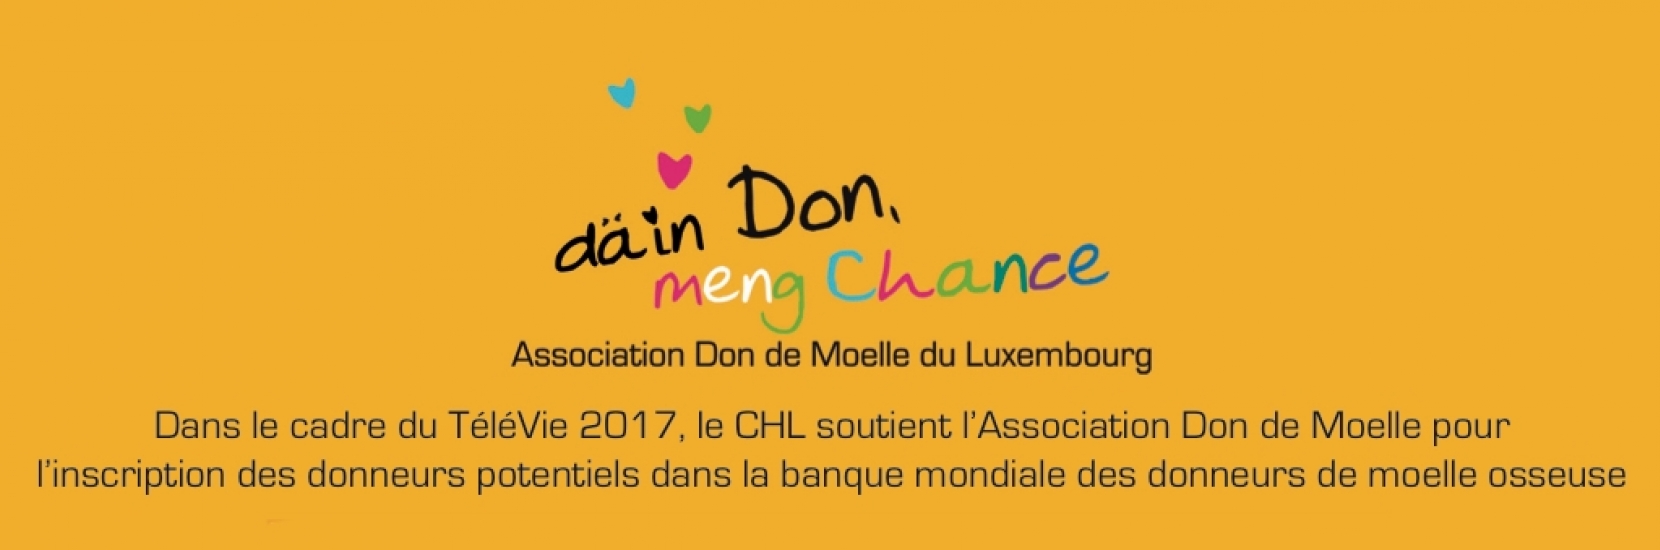 Conférence: Le don de moelle au Luxembourg 